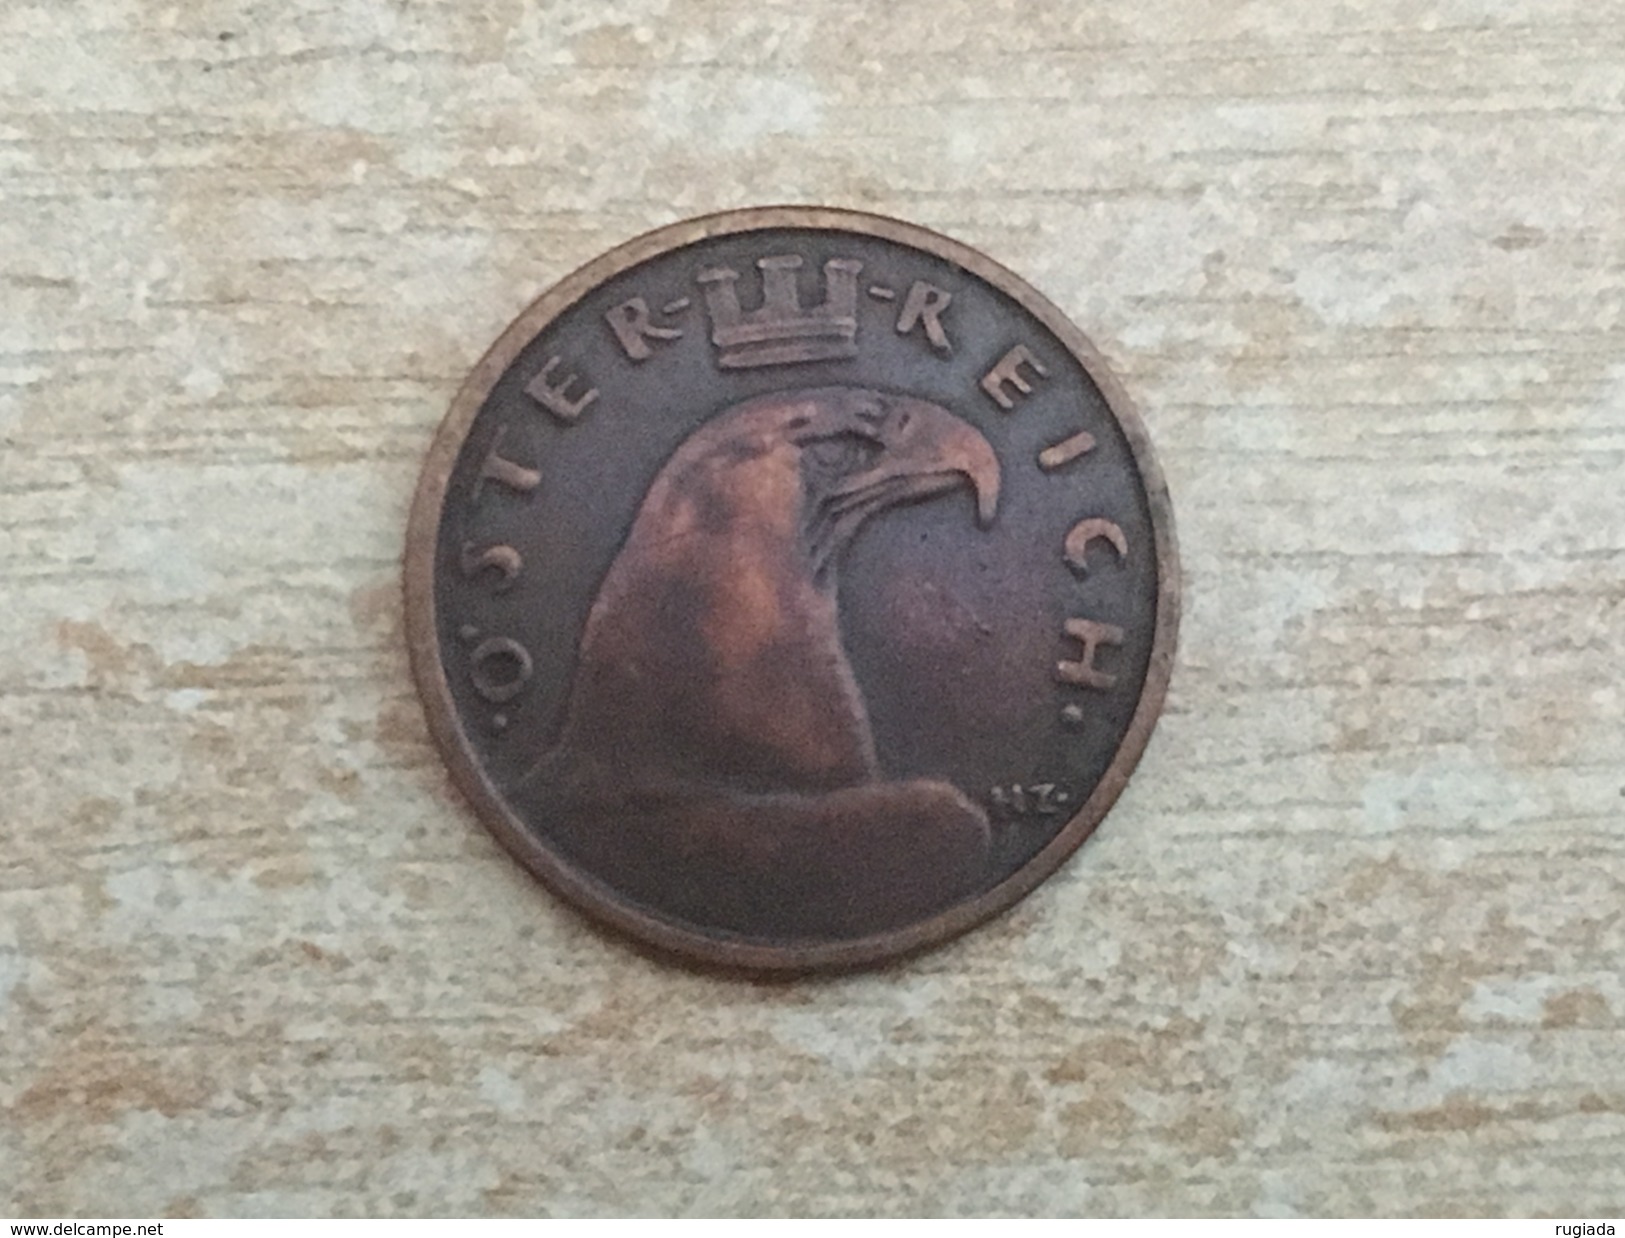 1926 Austria Osterreich 1 One Groschen Coin, Scarce Date - VF Very Fine - Austria